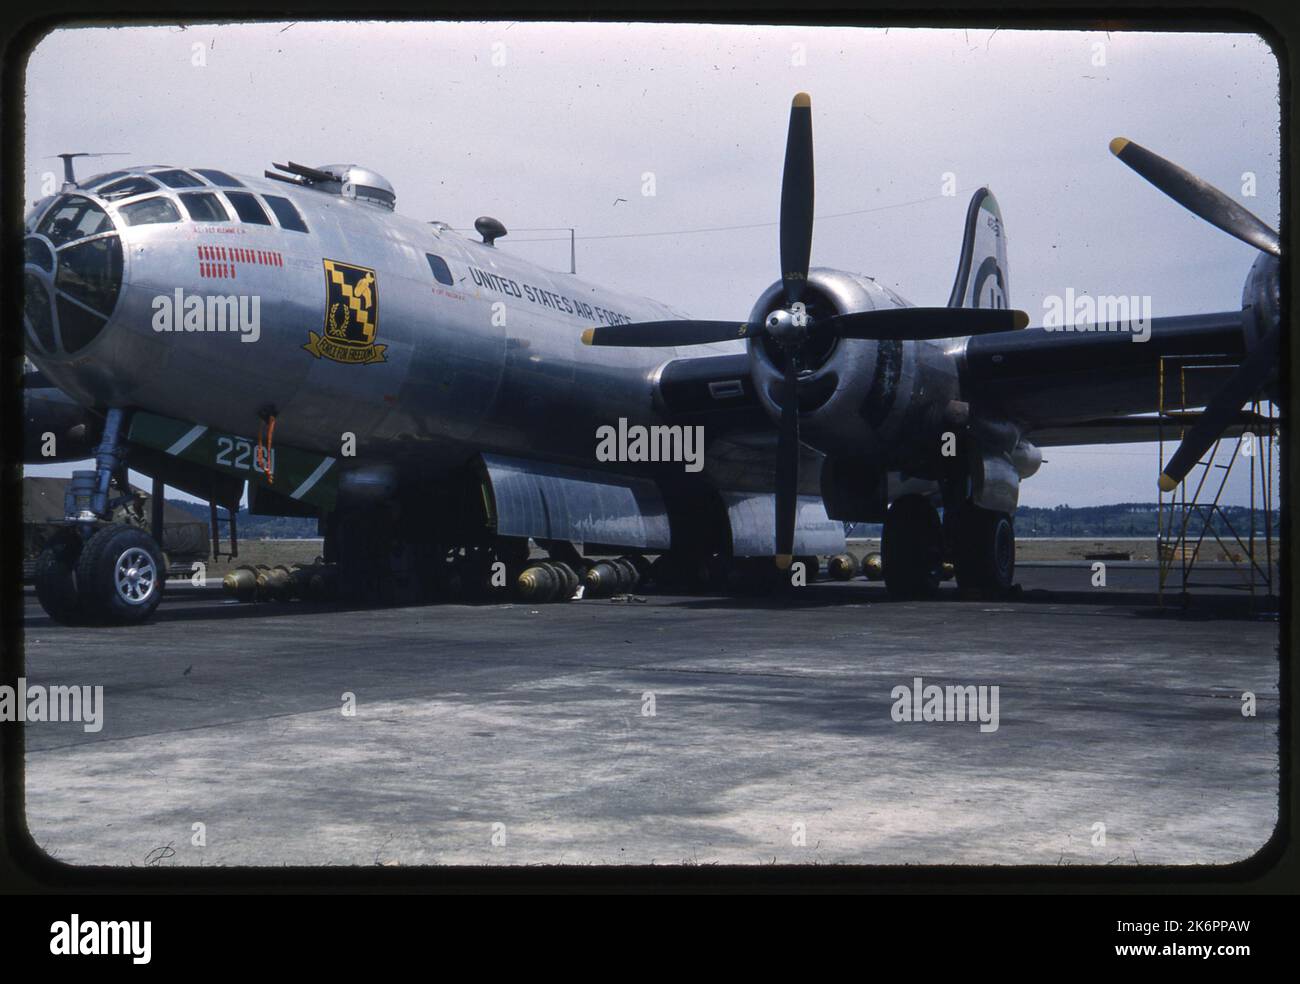 Vue de trois quarts avant gauche d'un Boeing B-29 Superforteresse avec des bombes placées sous l'avion. L'art du nez comprend le surnom de "Force pour la liberté" avec symbole, et le nombre de missions de bombe représentées comme des bombes. Vue de trois quarts avant gauche d'un Boeing B-29 Superforteresse avec des bombes placées sous l'avion. L'art du nez comprend le surnom de "Force pour la liberté" avec symbole, et le nombre de missions de bombe représentées comme des bombes. Banque D'Images